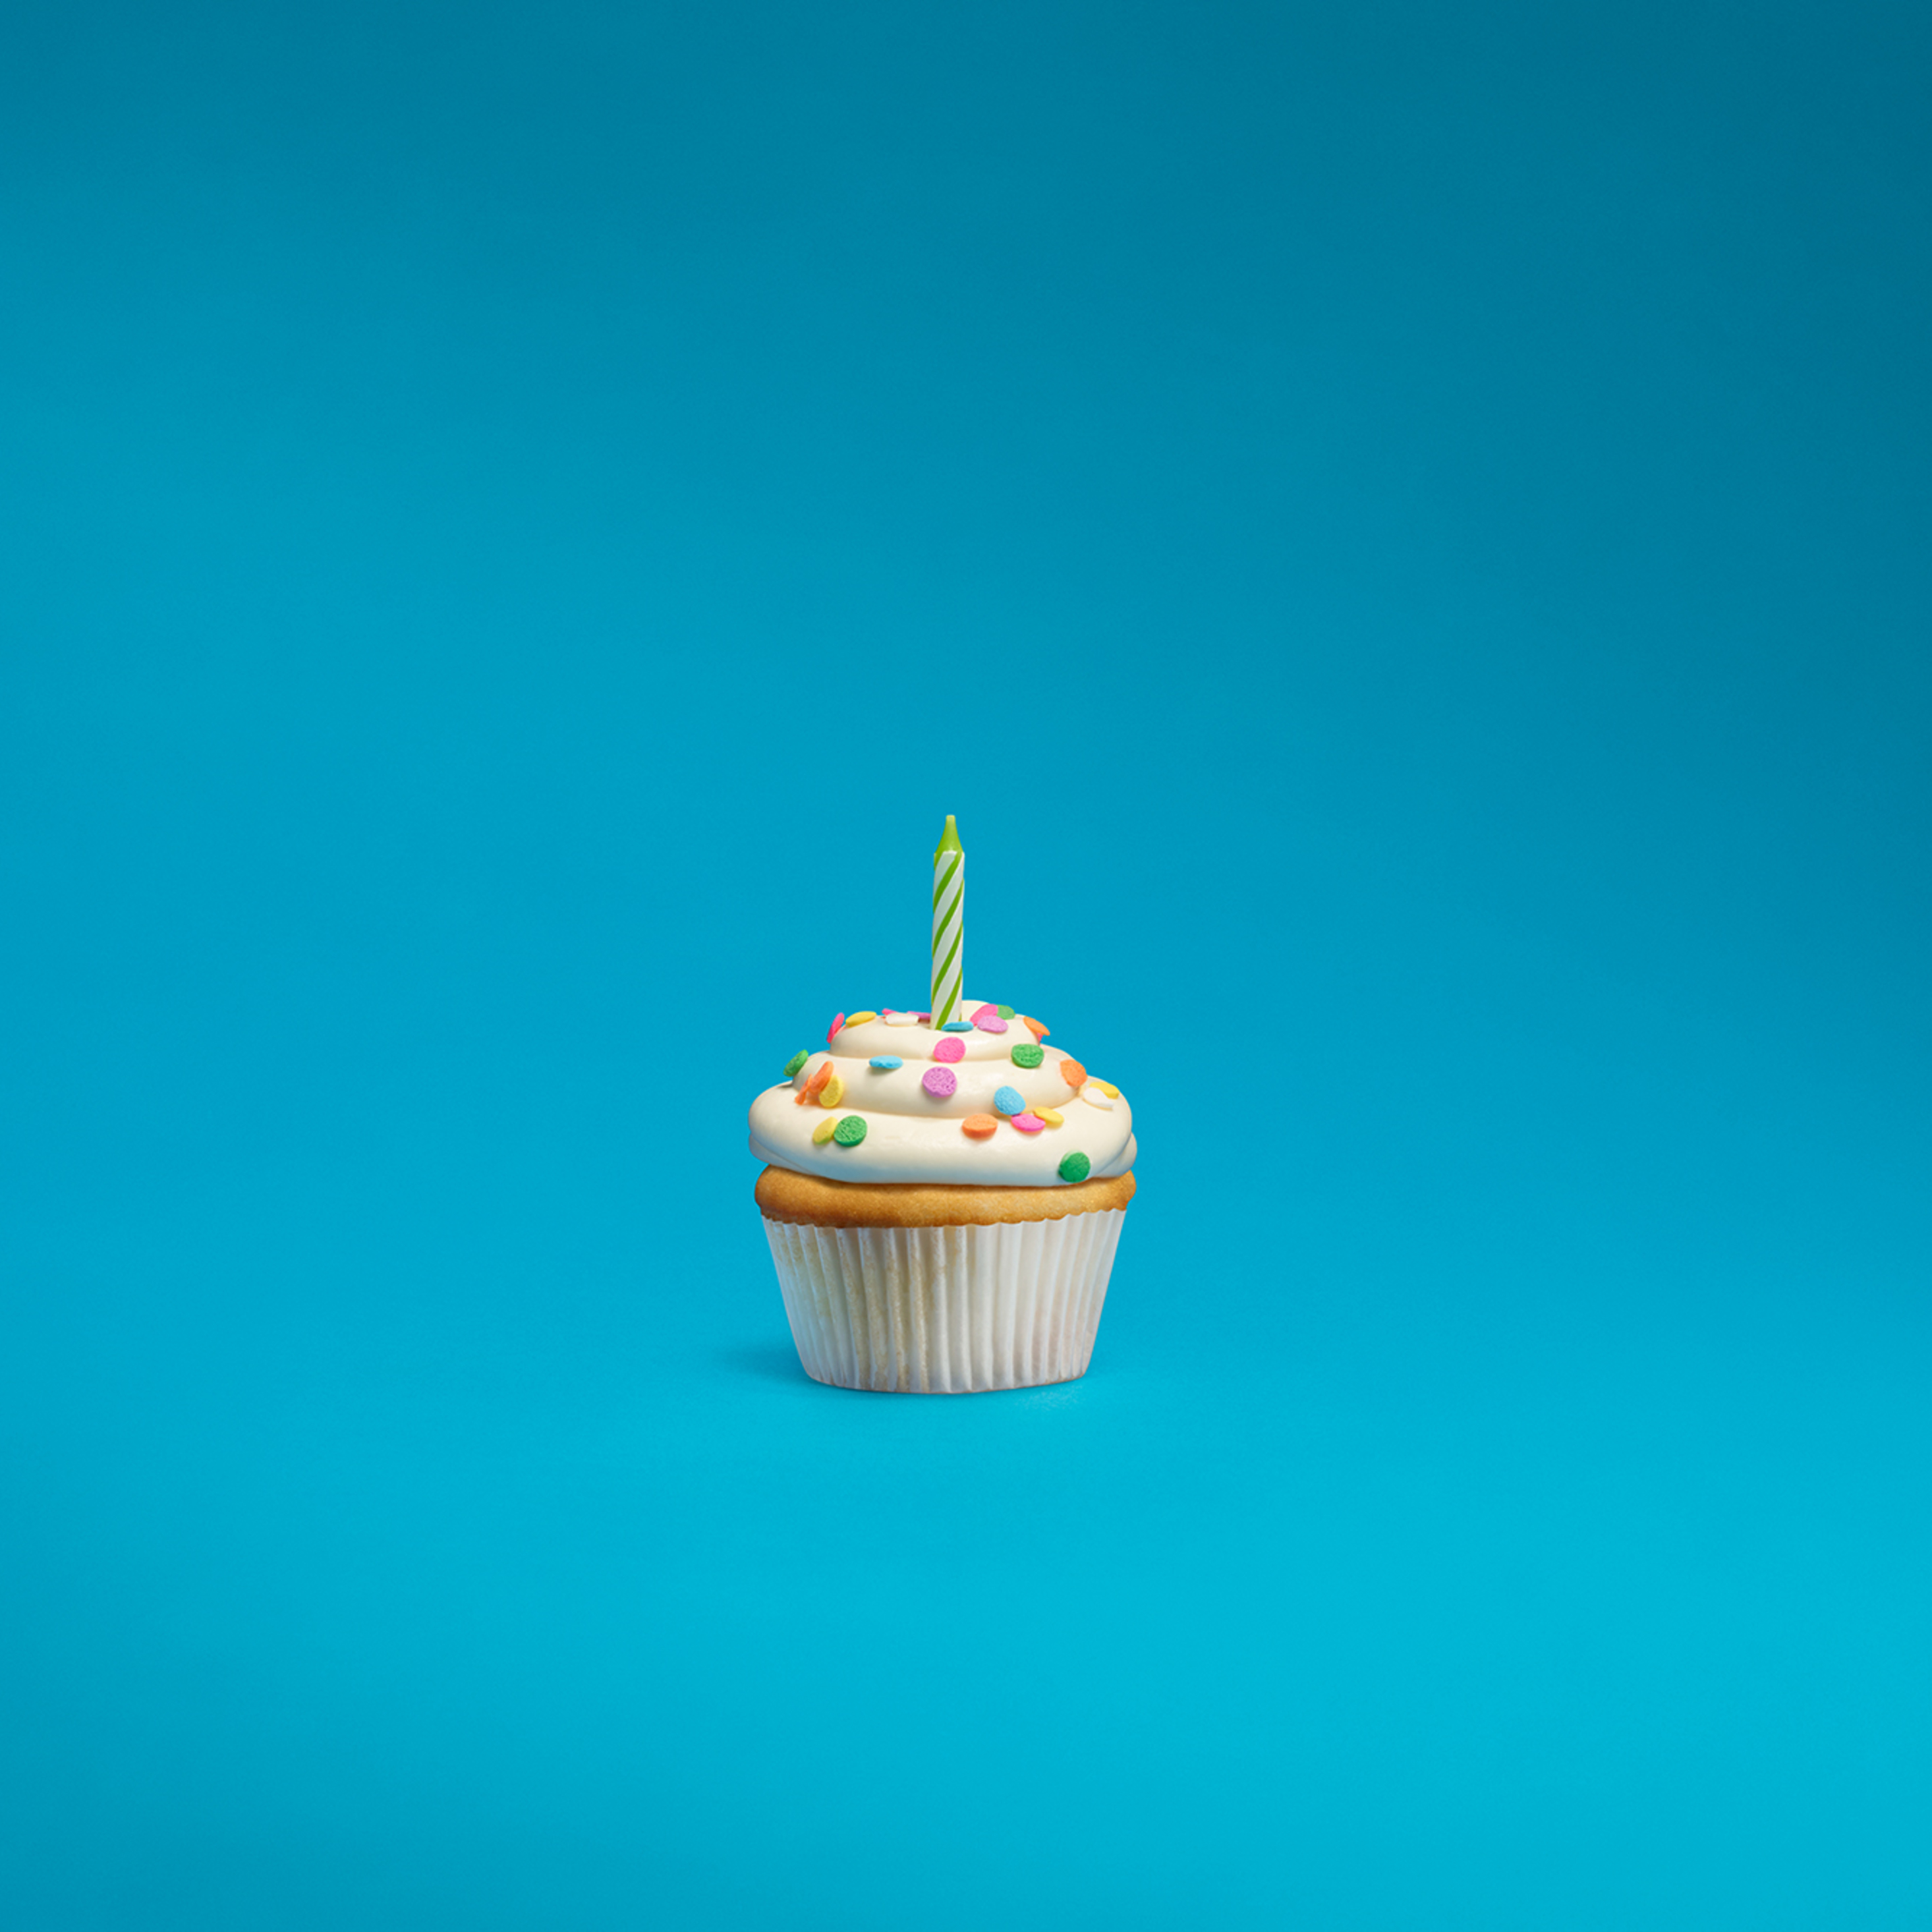 С днем рождения минималистично. Пирожное на день рождения. Пирожные фон. Кекс на голубом фоне. Пирожные на однотонном фоне.